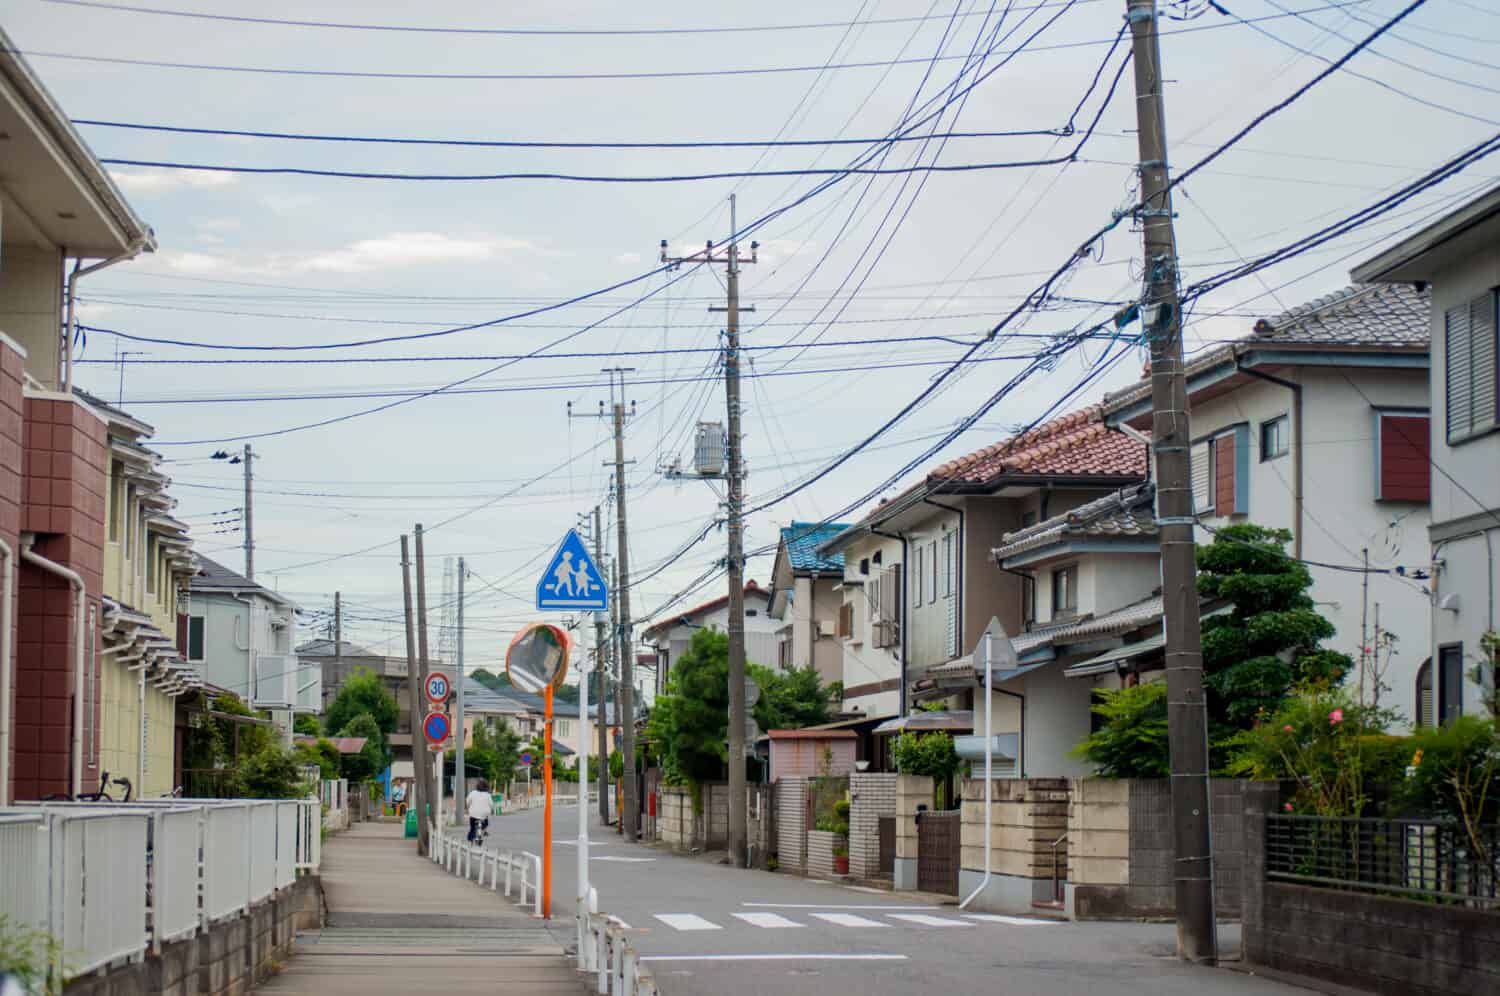 Japan street photograph in Nagareyama city, Chiba